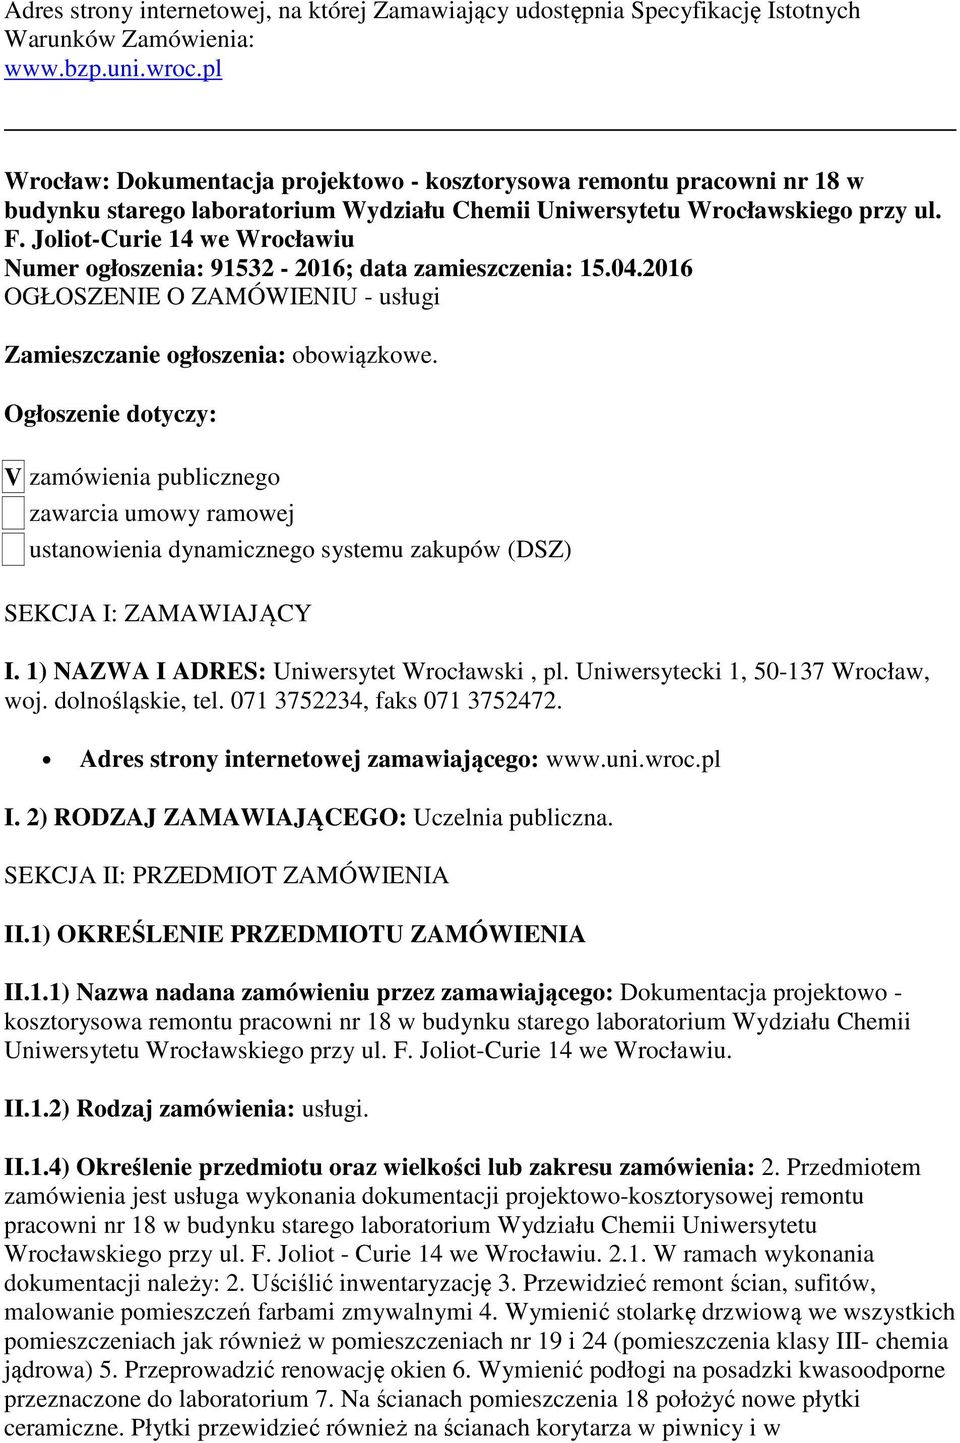 Joliot-Curie 14 we Wrocławiu Numer ogłoszenia: 91532-2016; data zamieszczenia: 15.04.2016 OGŁOSZENIE O ZAMÓWIENIU - usługi Zamieszczanie ogłoszenia: obowiązkowe.